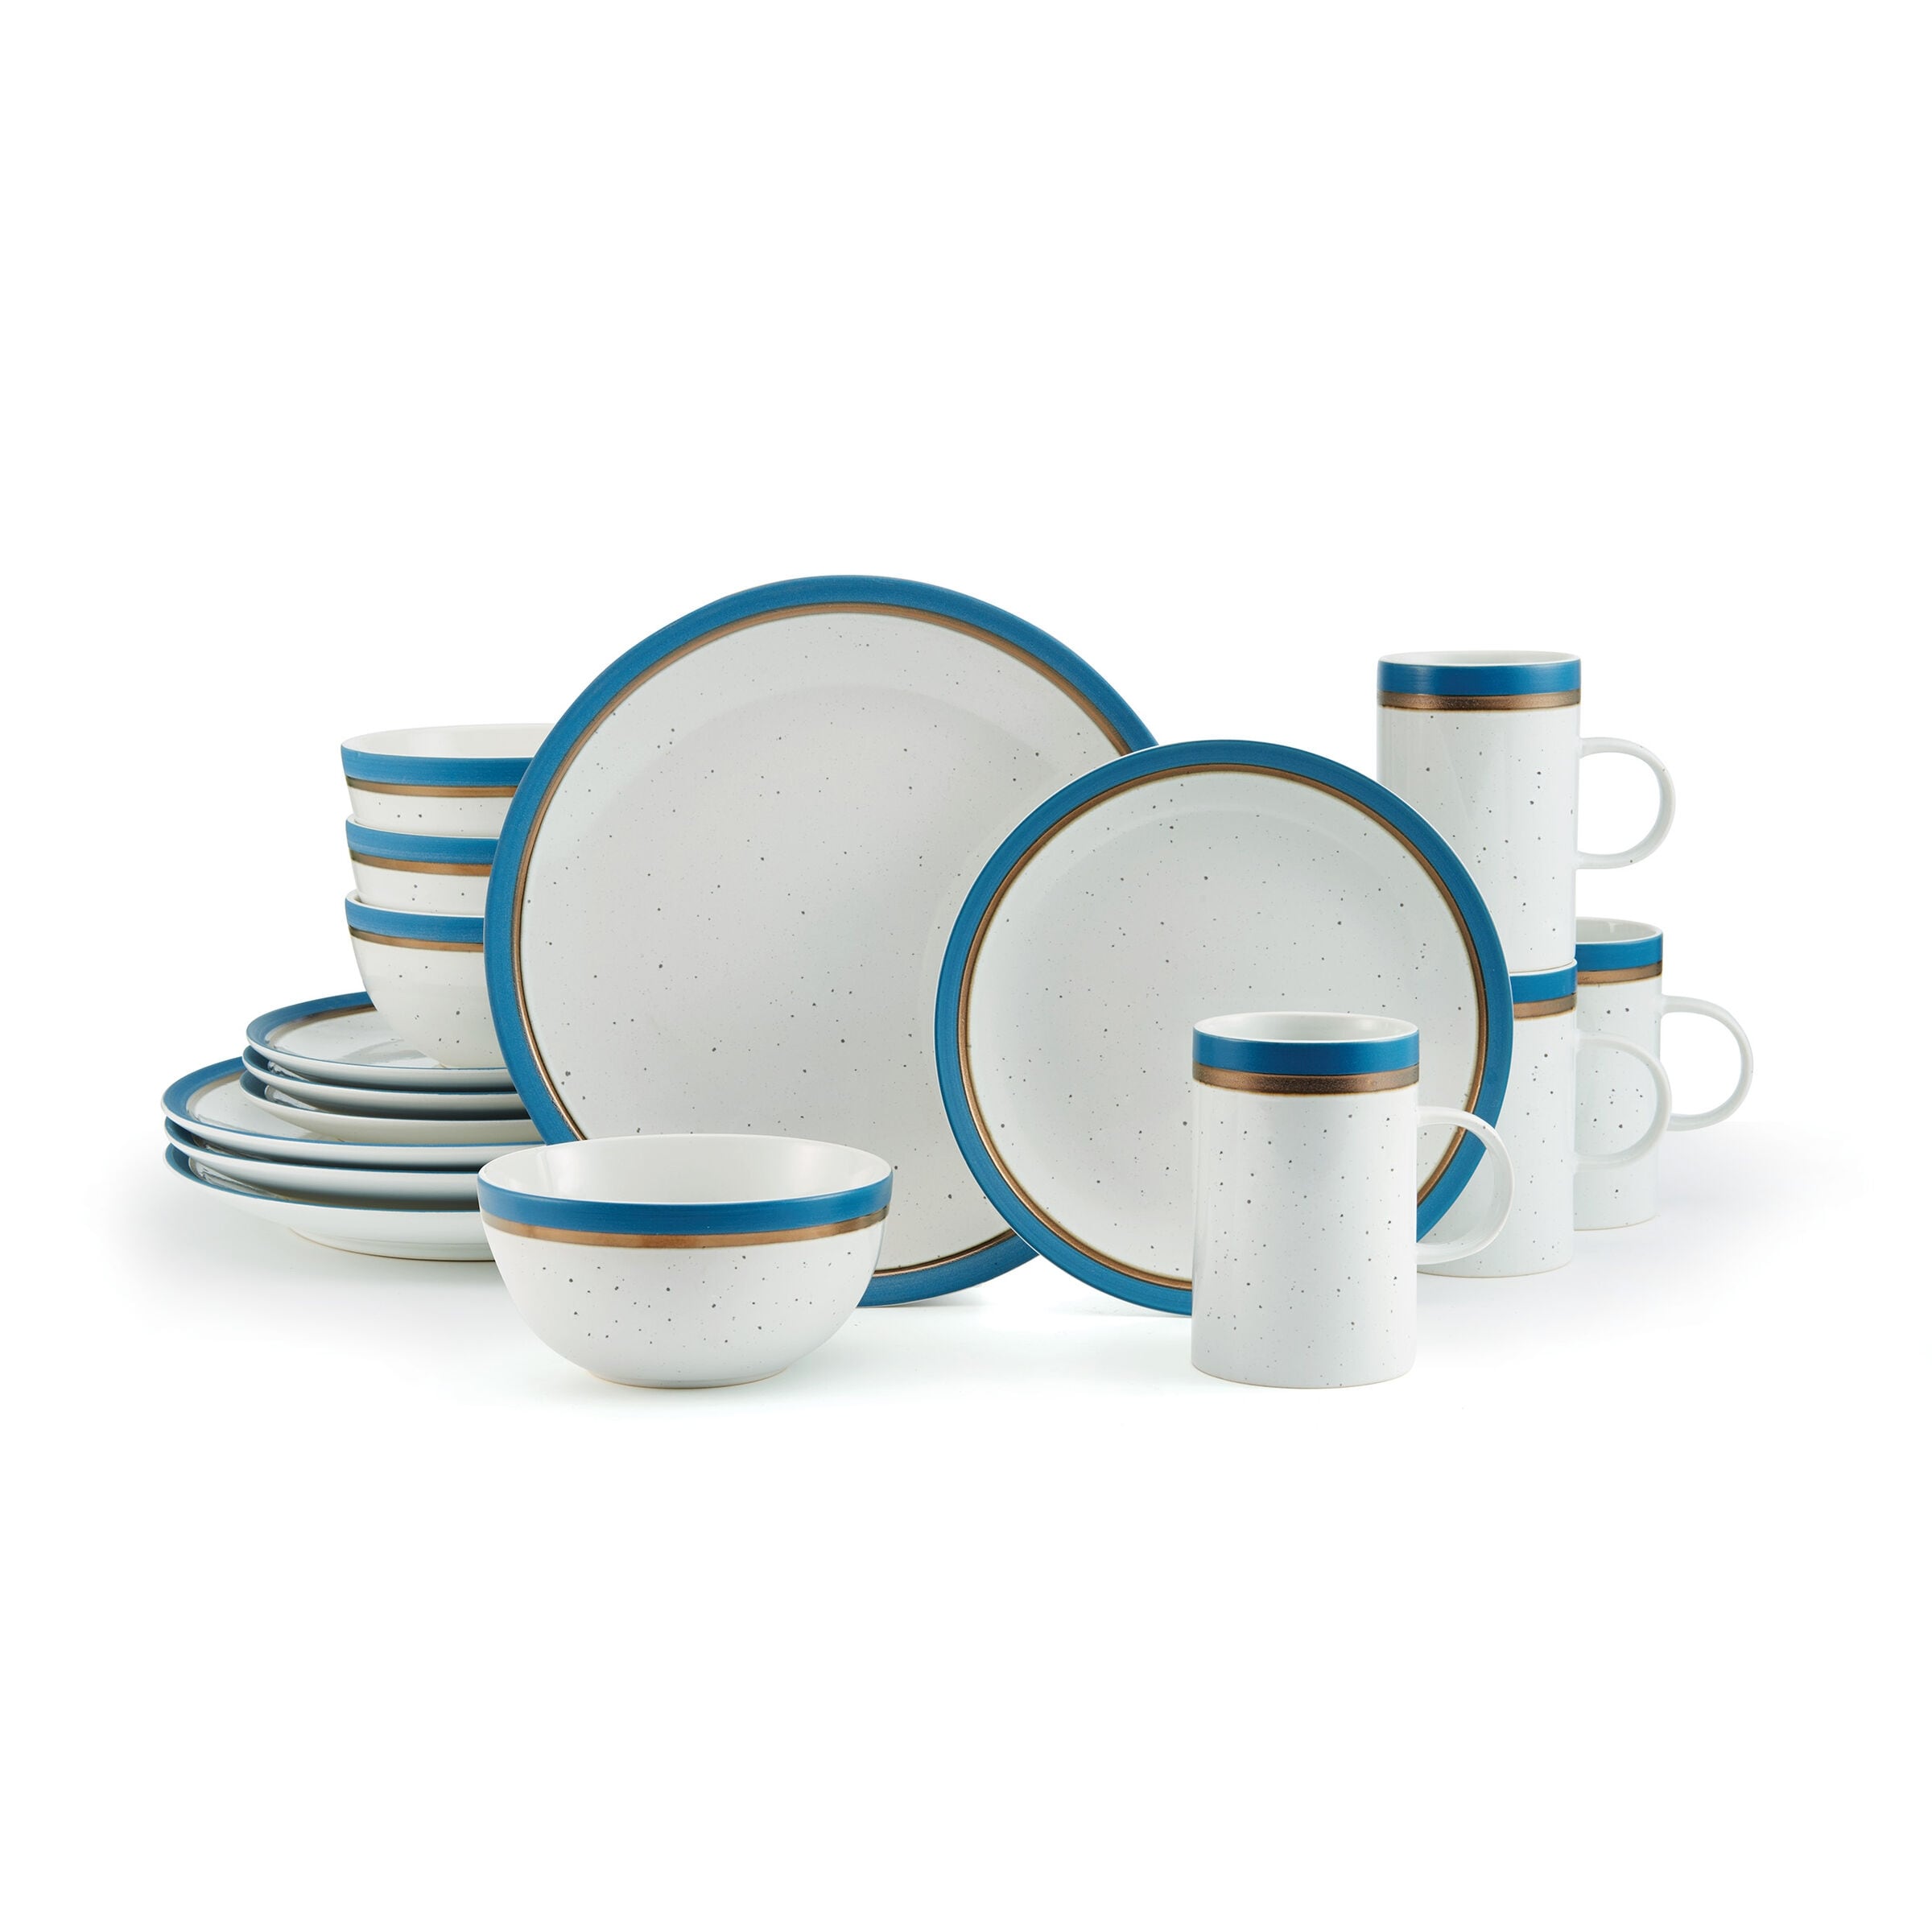 Pfaltzgraff Gabriela Storage Bowls, 6 inch, Blue and White